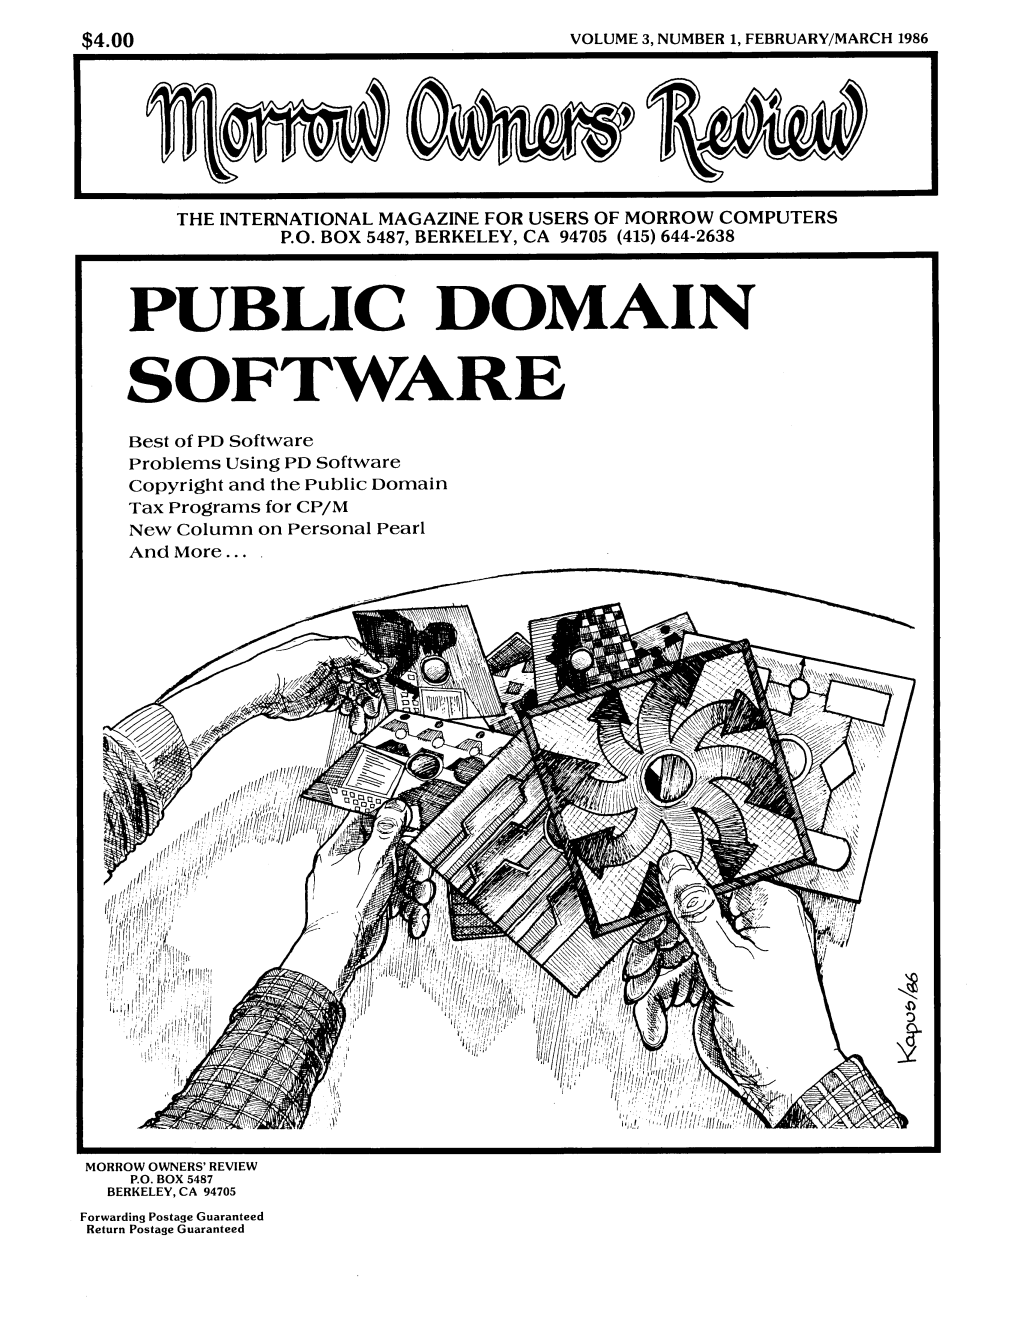 Public Domain Software